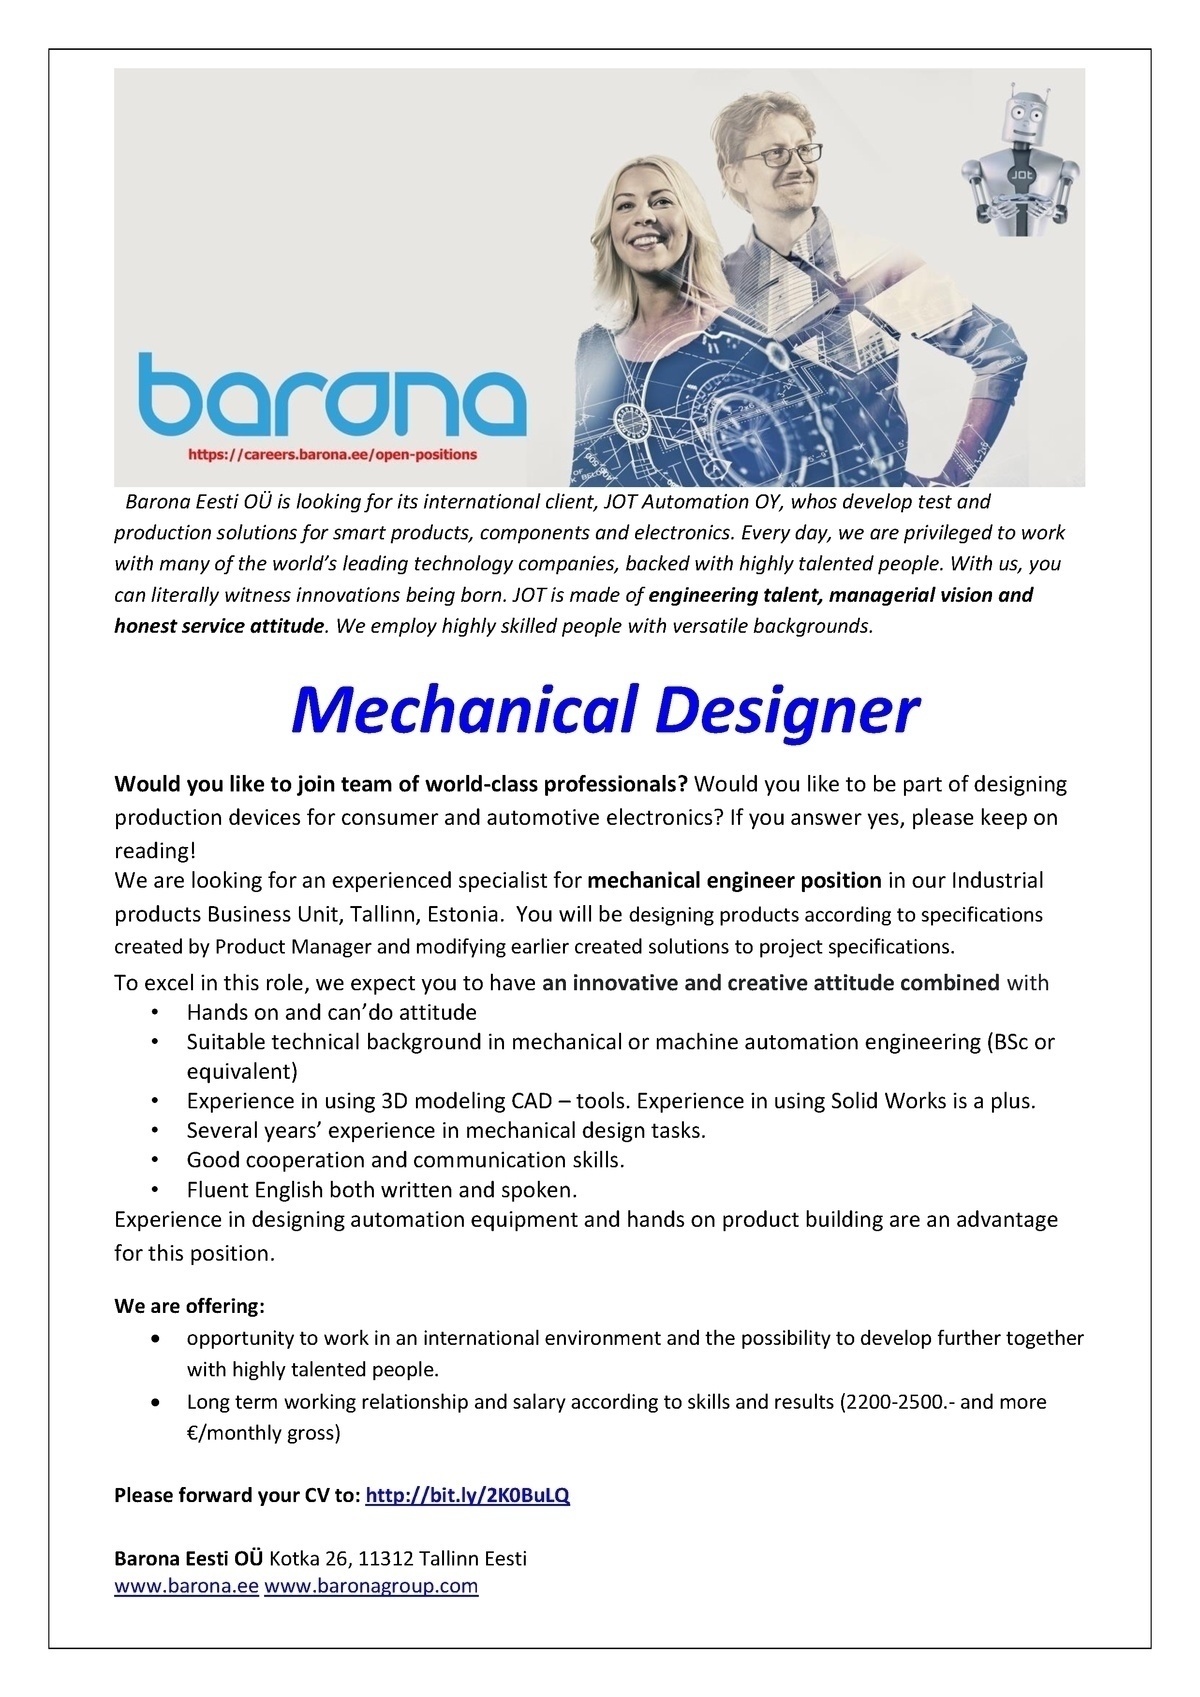 Barona Eesti OÜ Mechanical Designer/Engineer